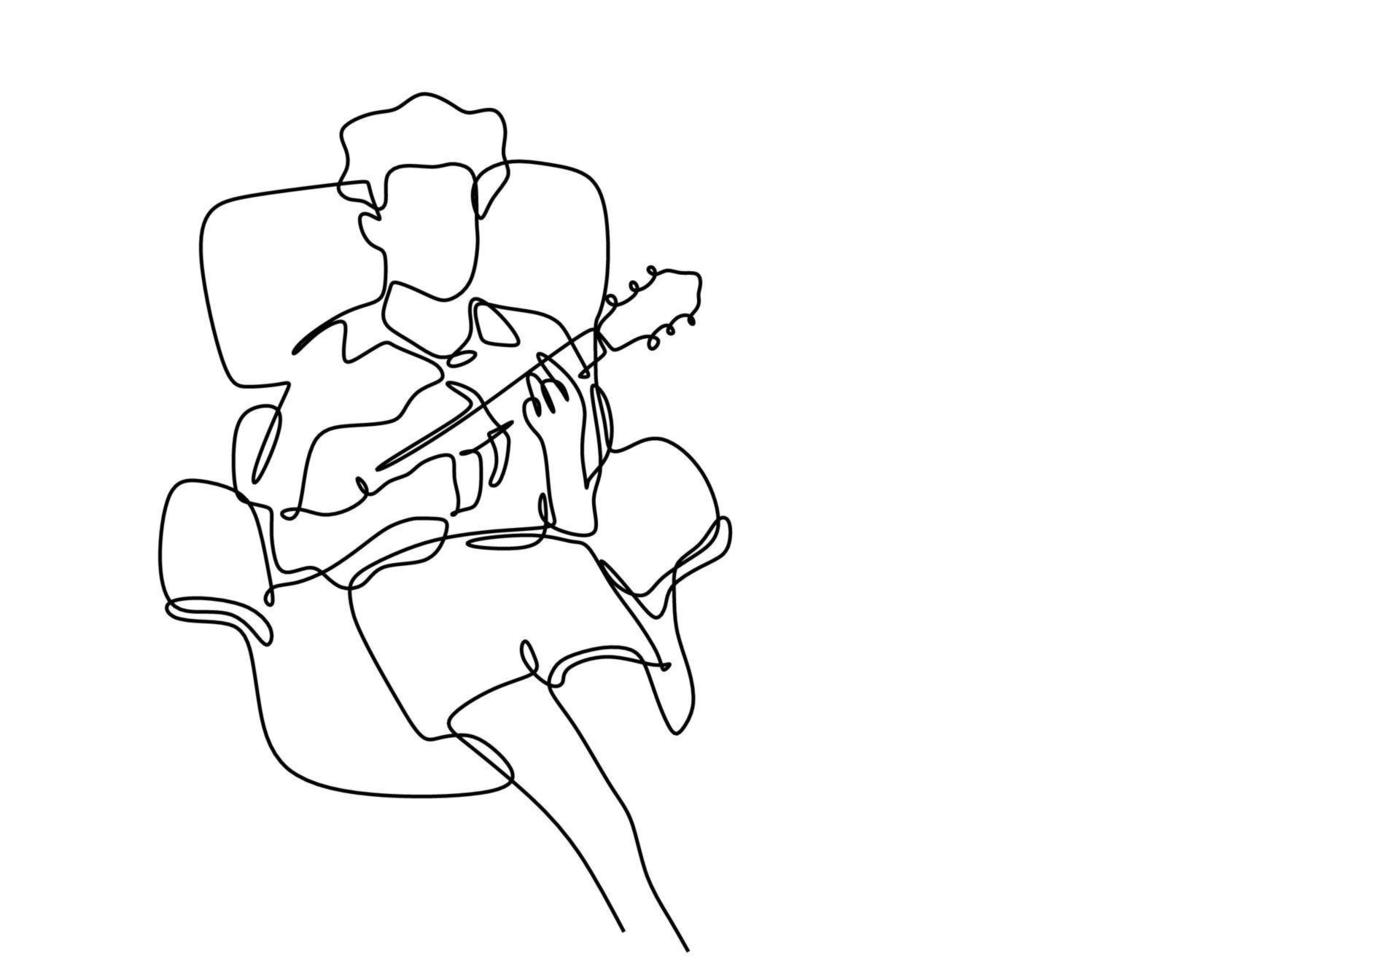 un disegno a tratteggio dell'uomo che suona la chitarra ukulele. vettore